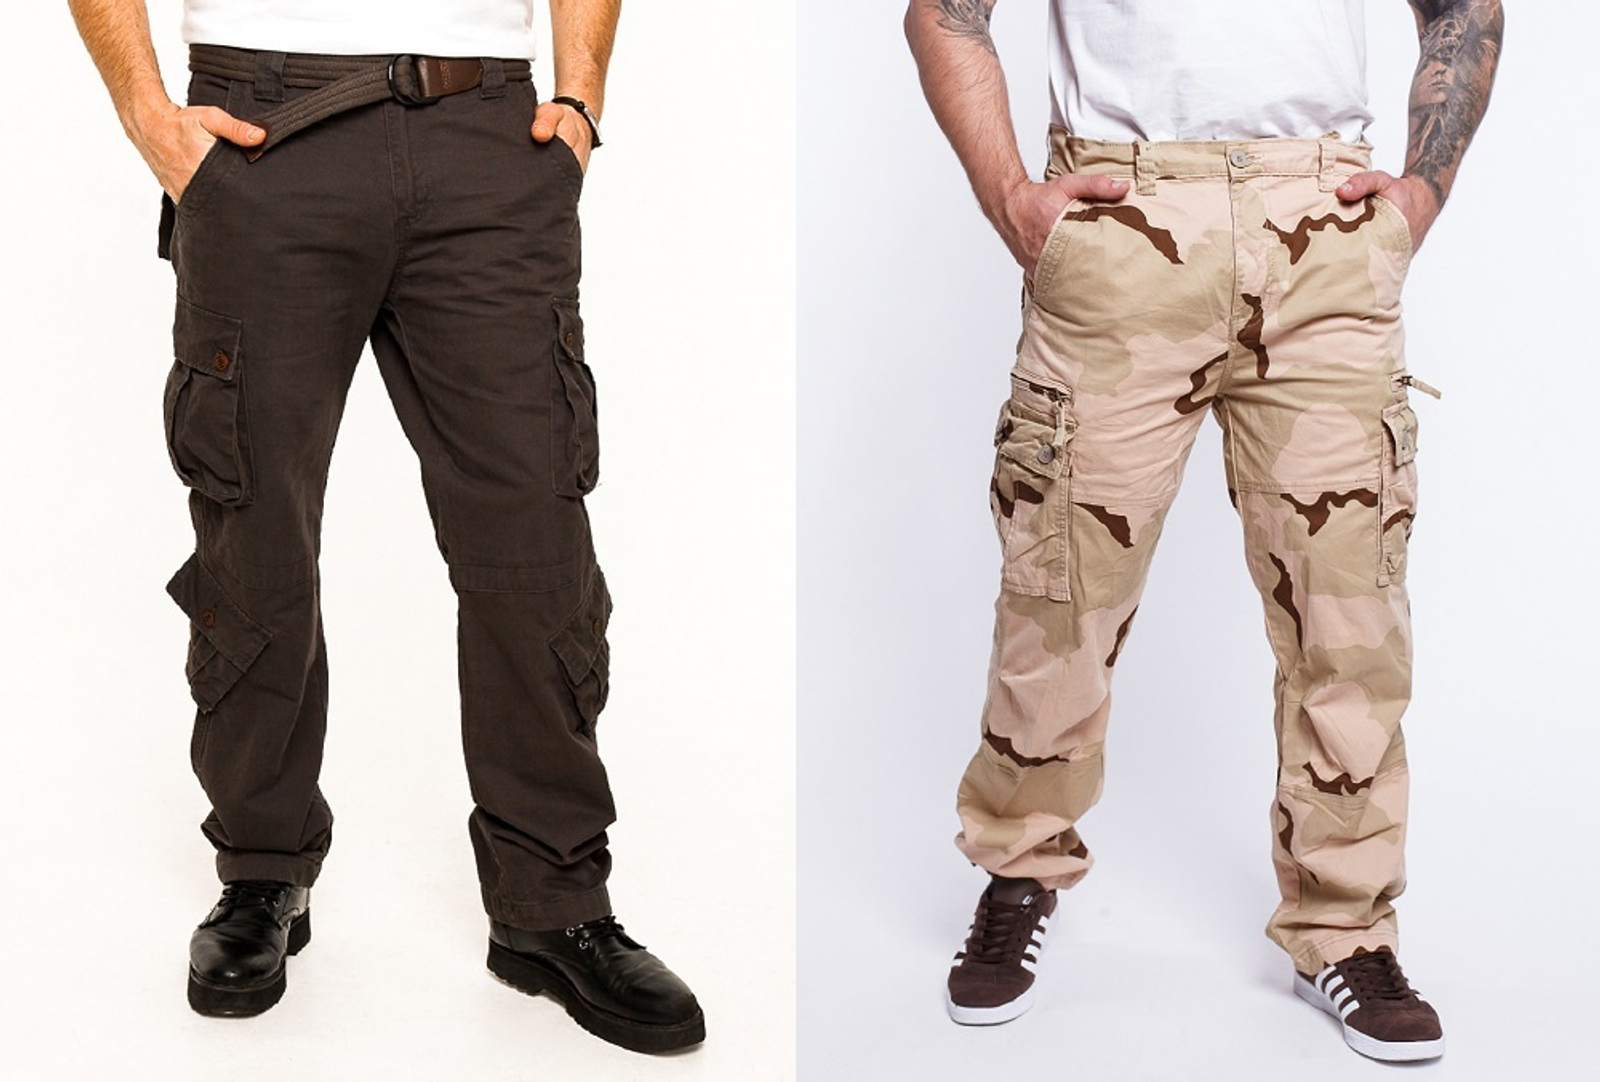 Длина мужских брюк и джинсов — как определить правильную длину